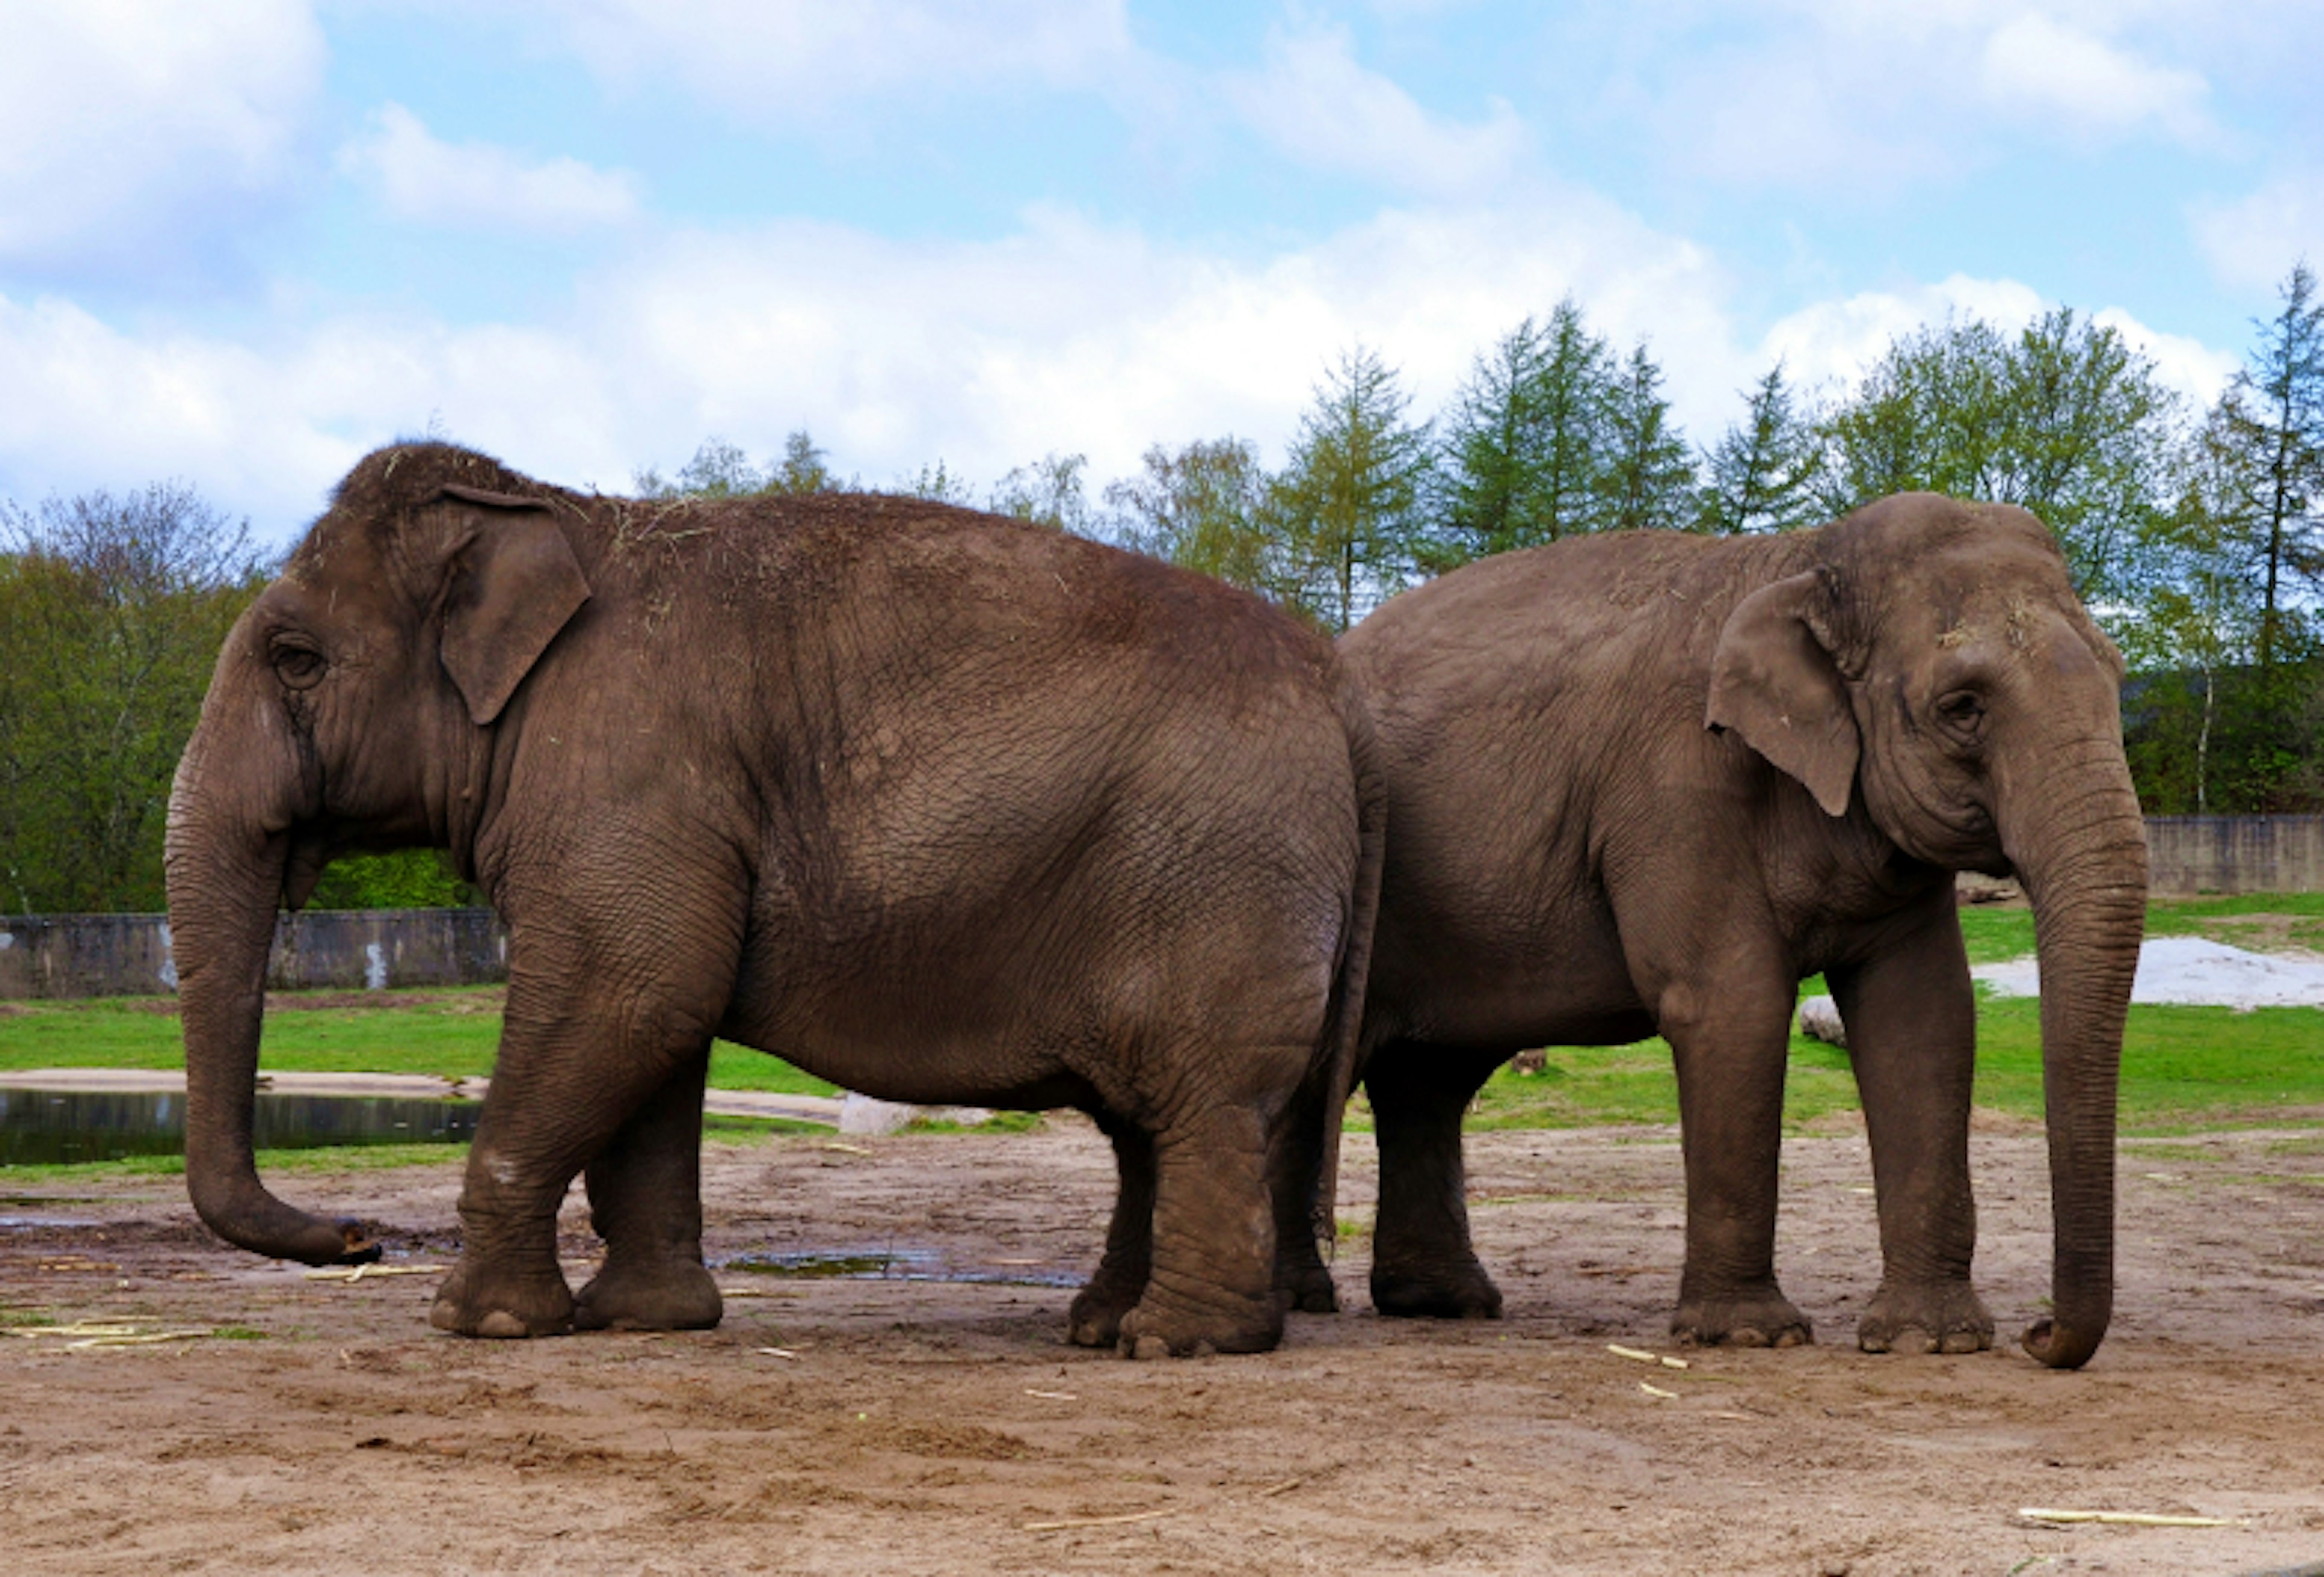 Couple of elephants in Givskud zoo, Denmark